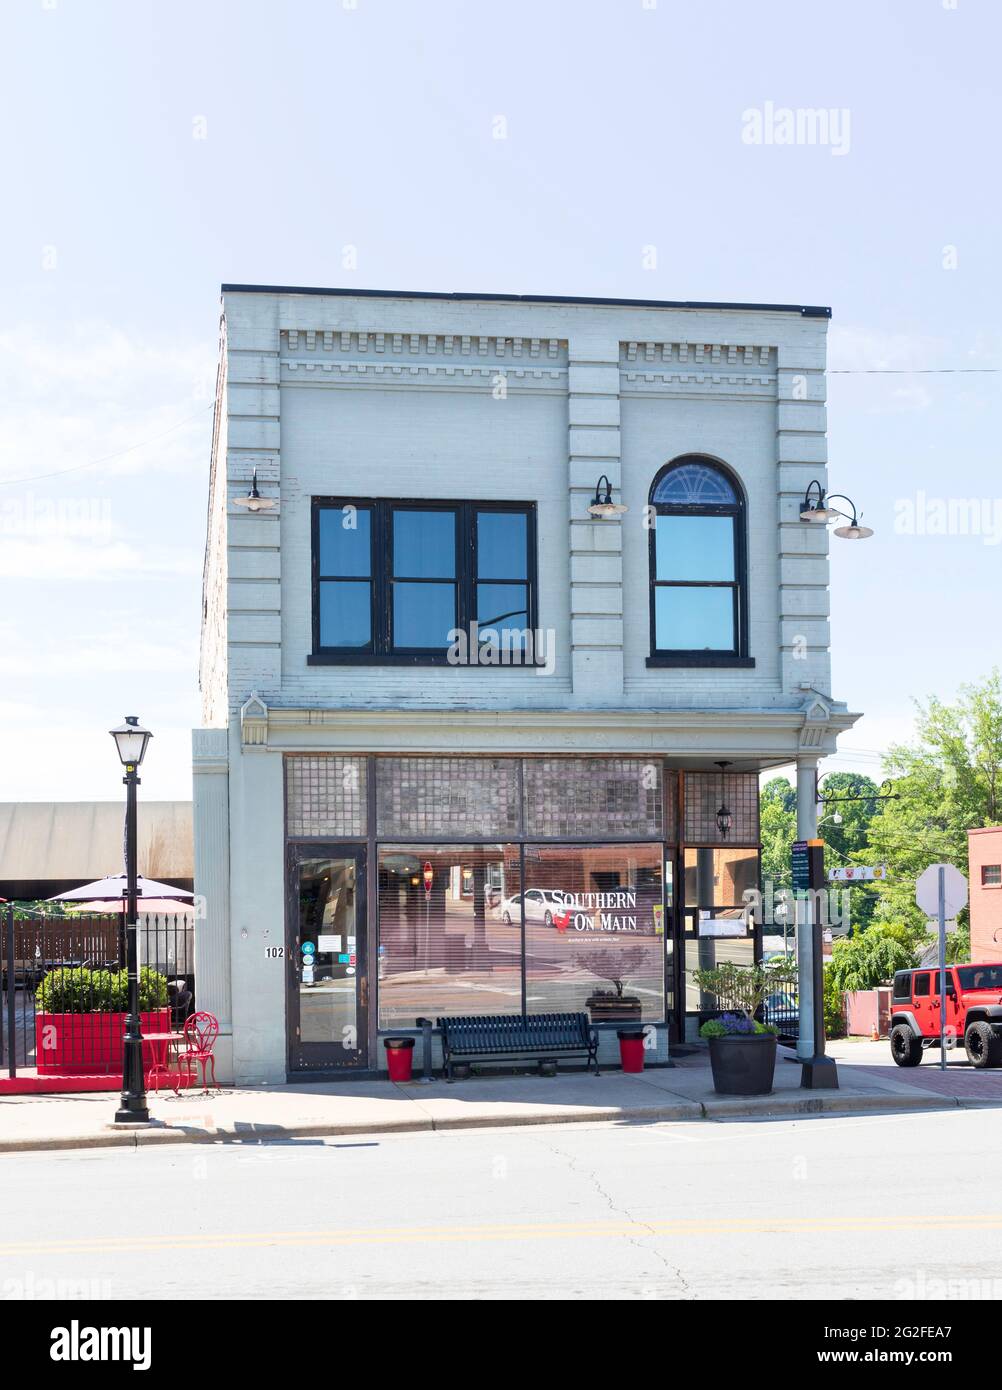 ELKIN, NC, USA-5 JUNE 2021: Southern On Main ist ein Restaurant, das sich auf südliche Gerichte spezialisiert hat. Vertikales Bild. Stockfoto